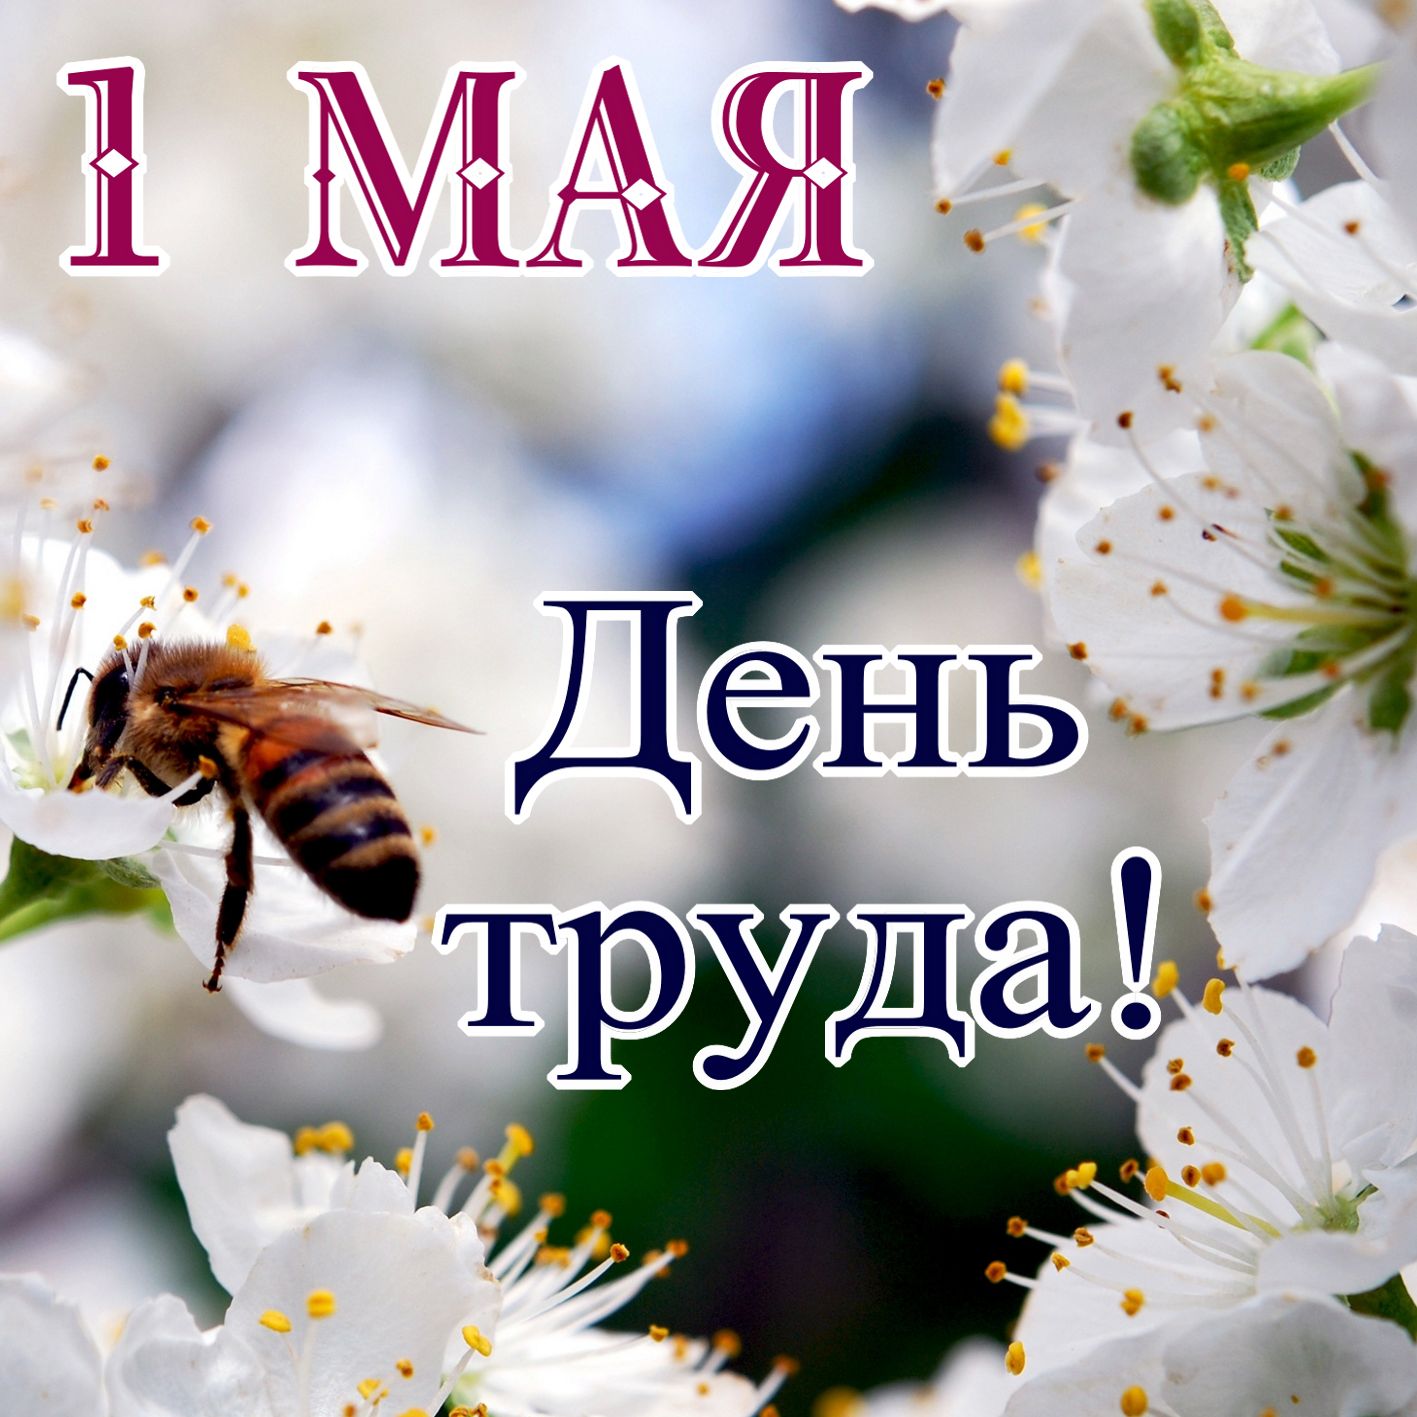 1 мая праздник весны картинки. Поздравление с 1 мая. Открытки с 1 мая. 1 Мая день труда. С 1 мая открытки с поздравлениями.